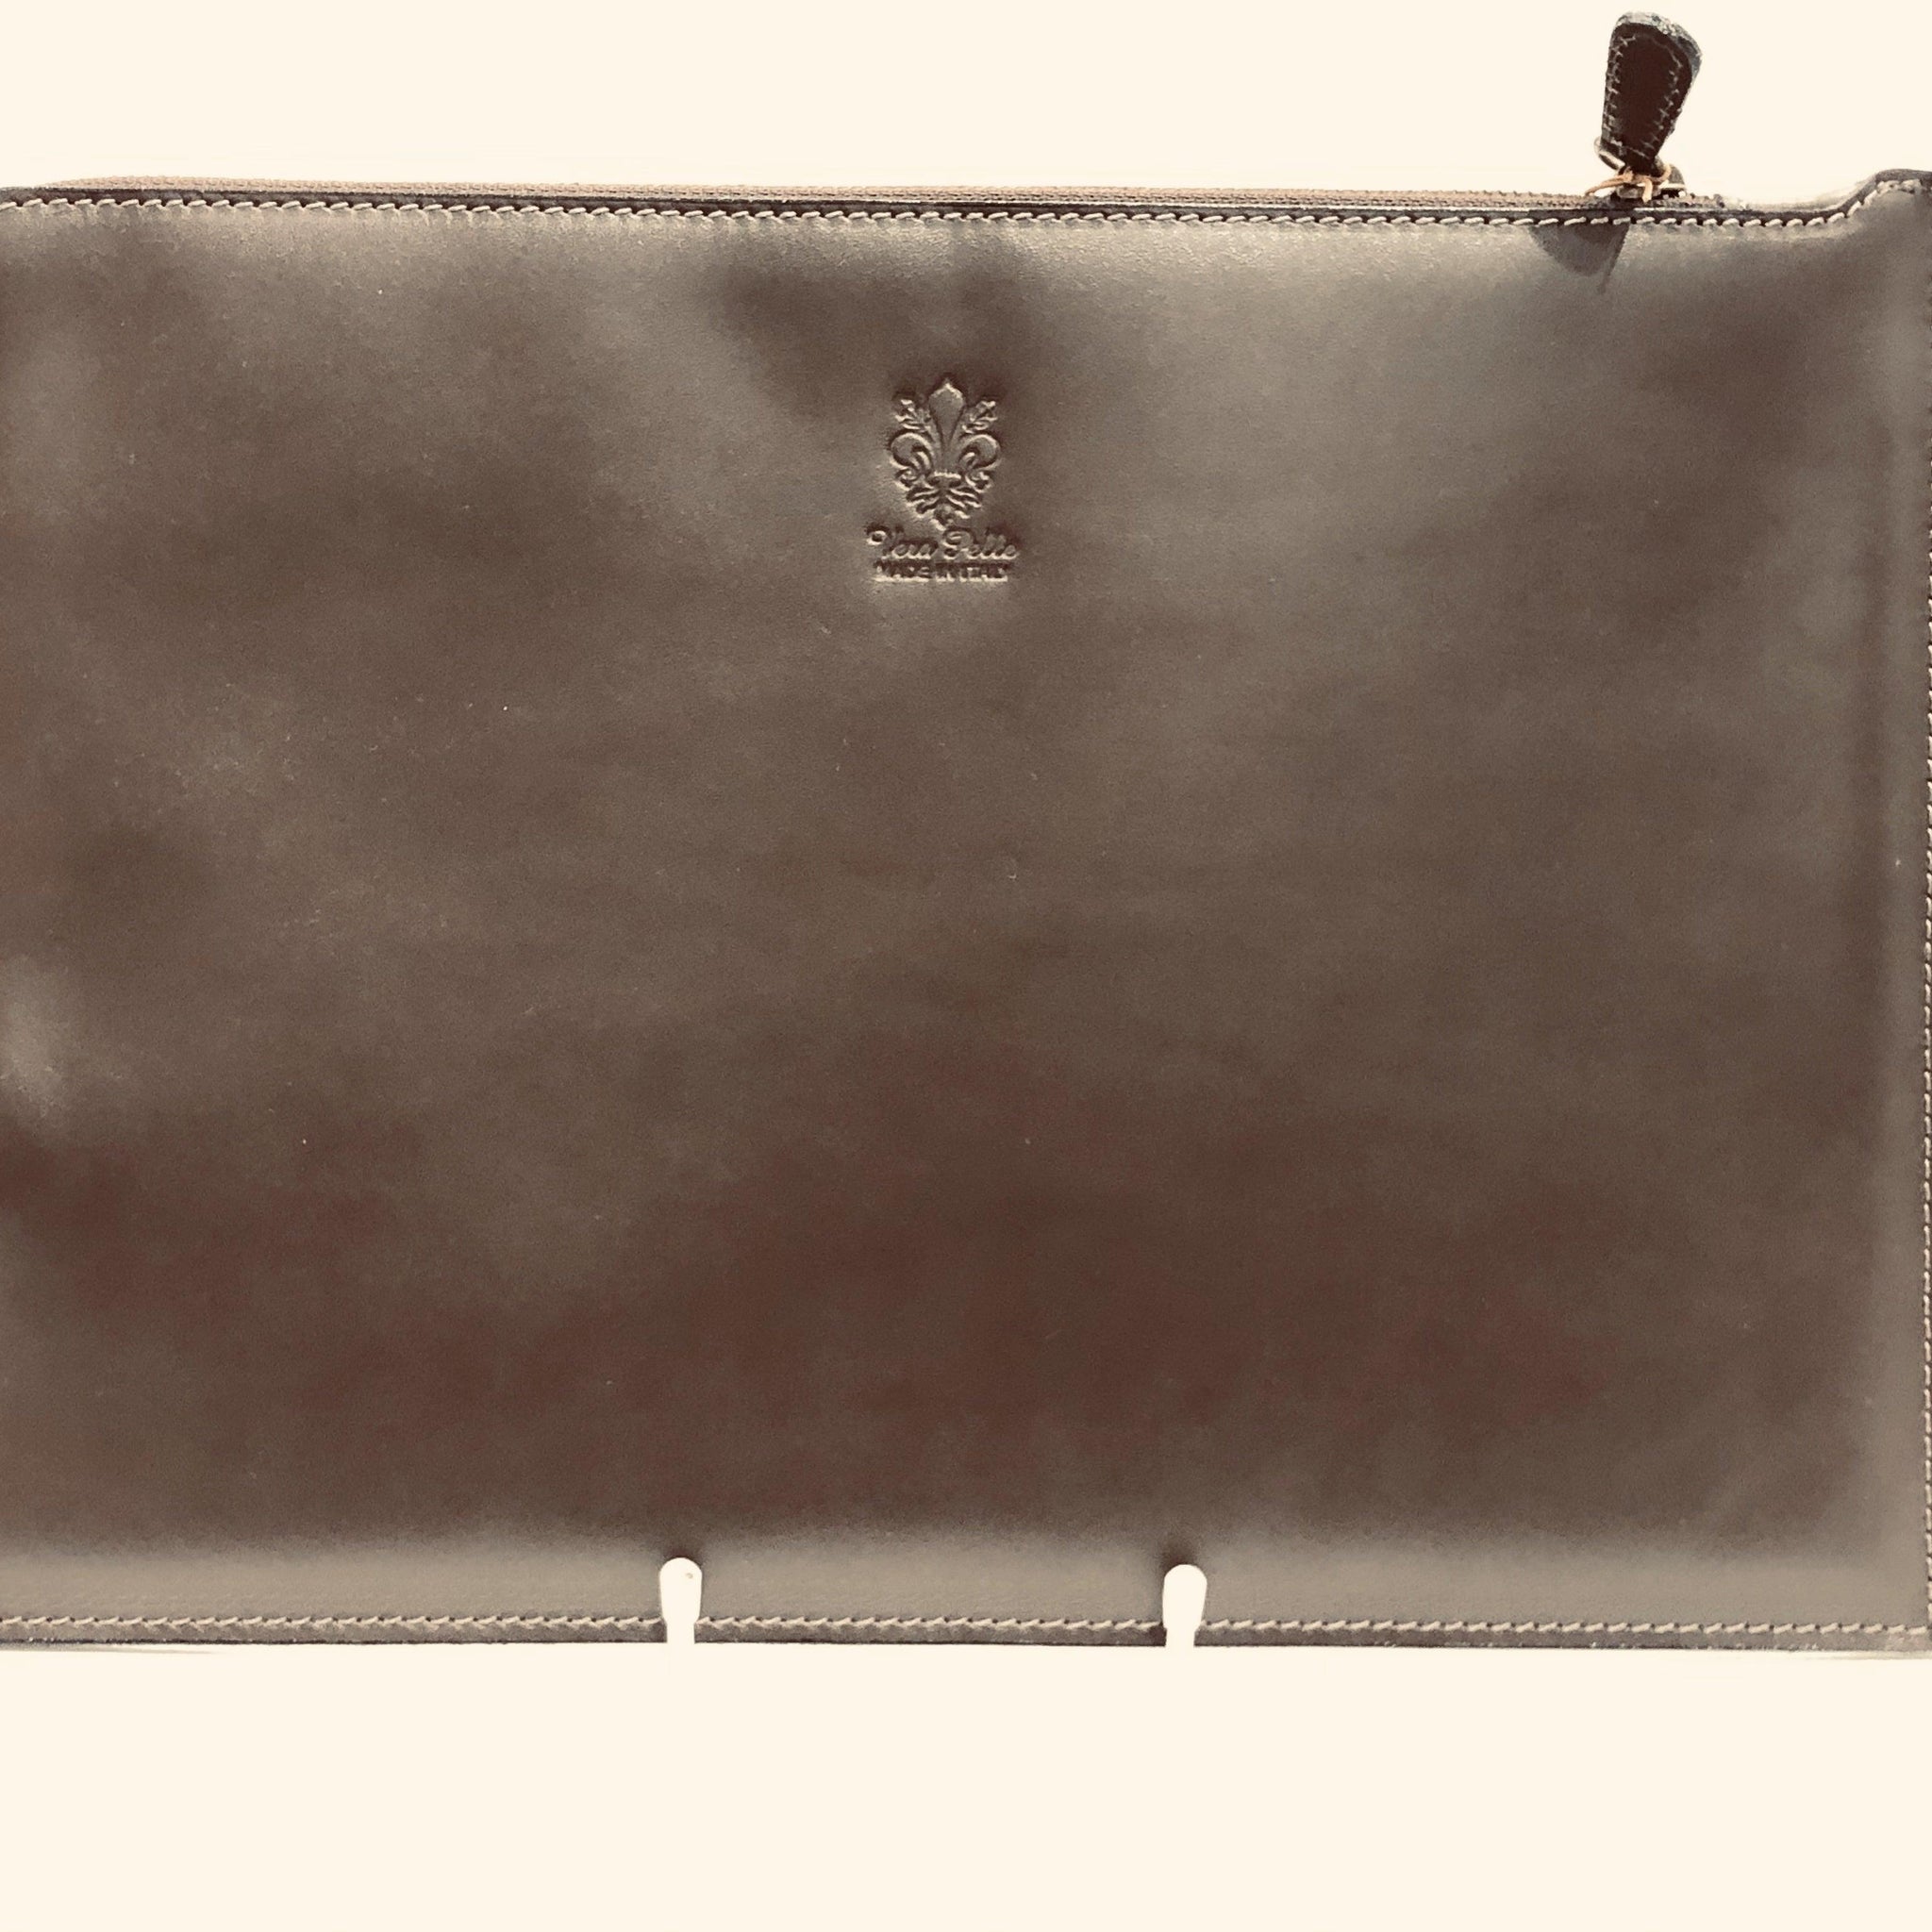 Ipad Case Italian Leather 27X20 cm - Handworks Nouveau Paperie